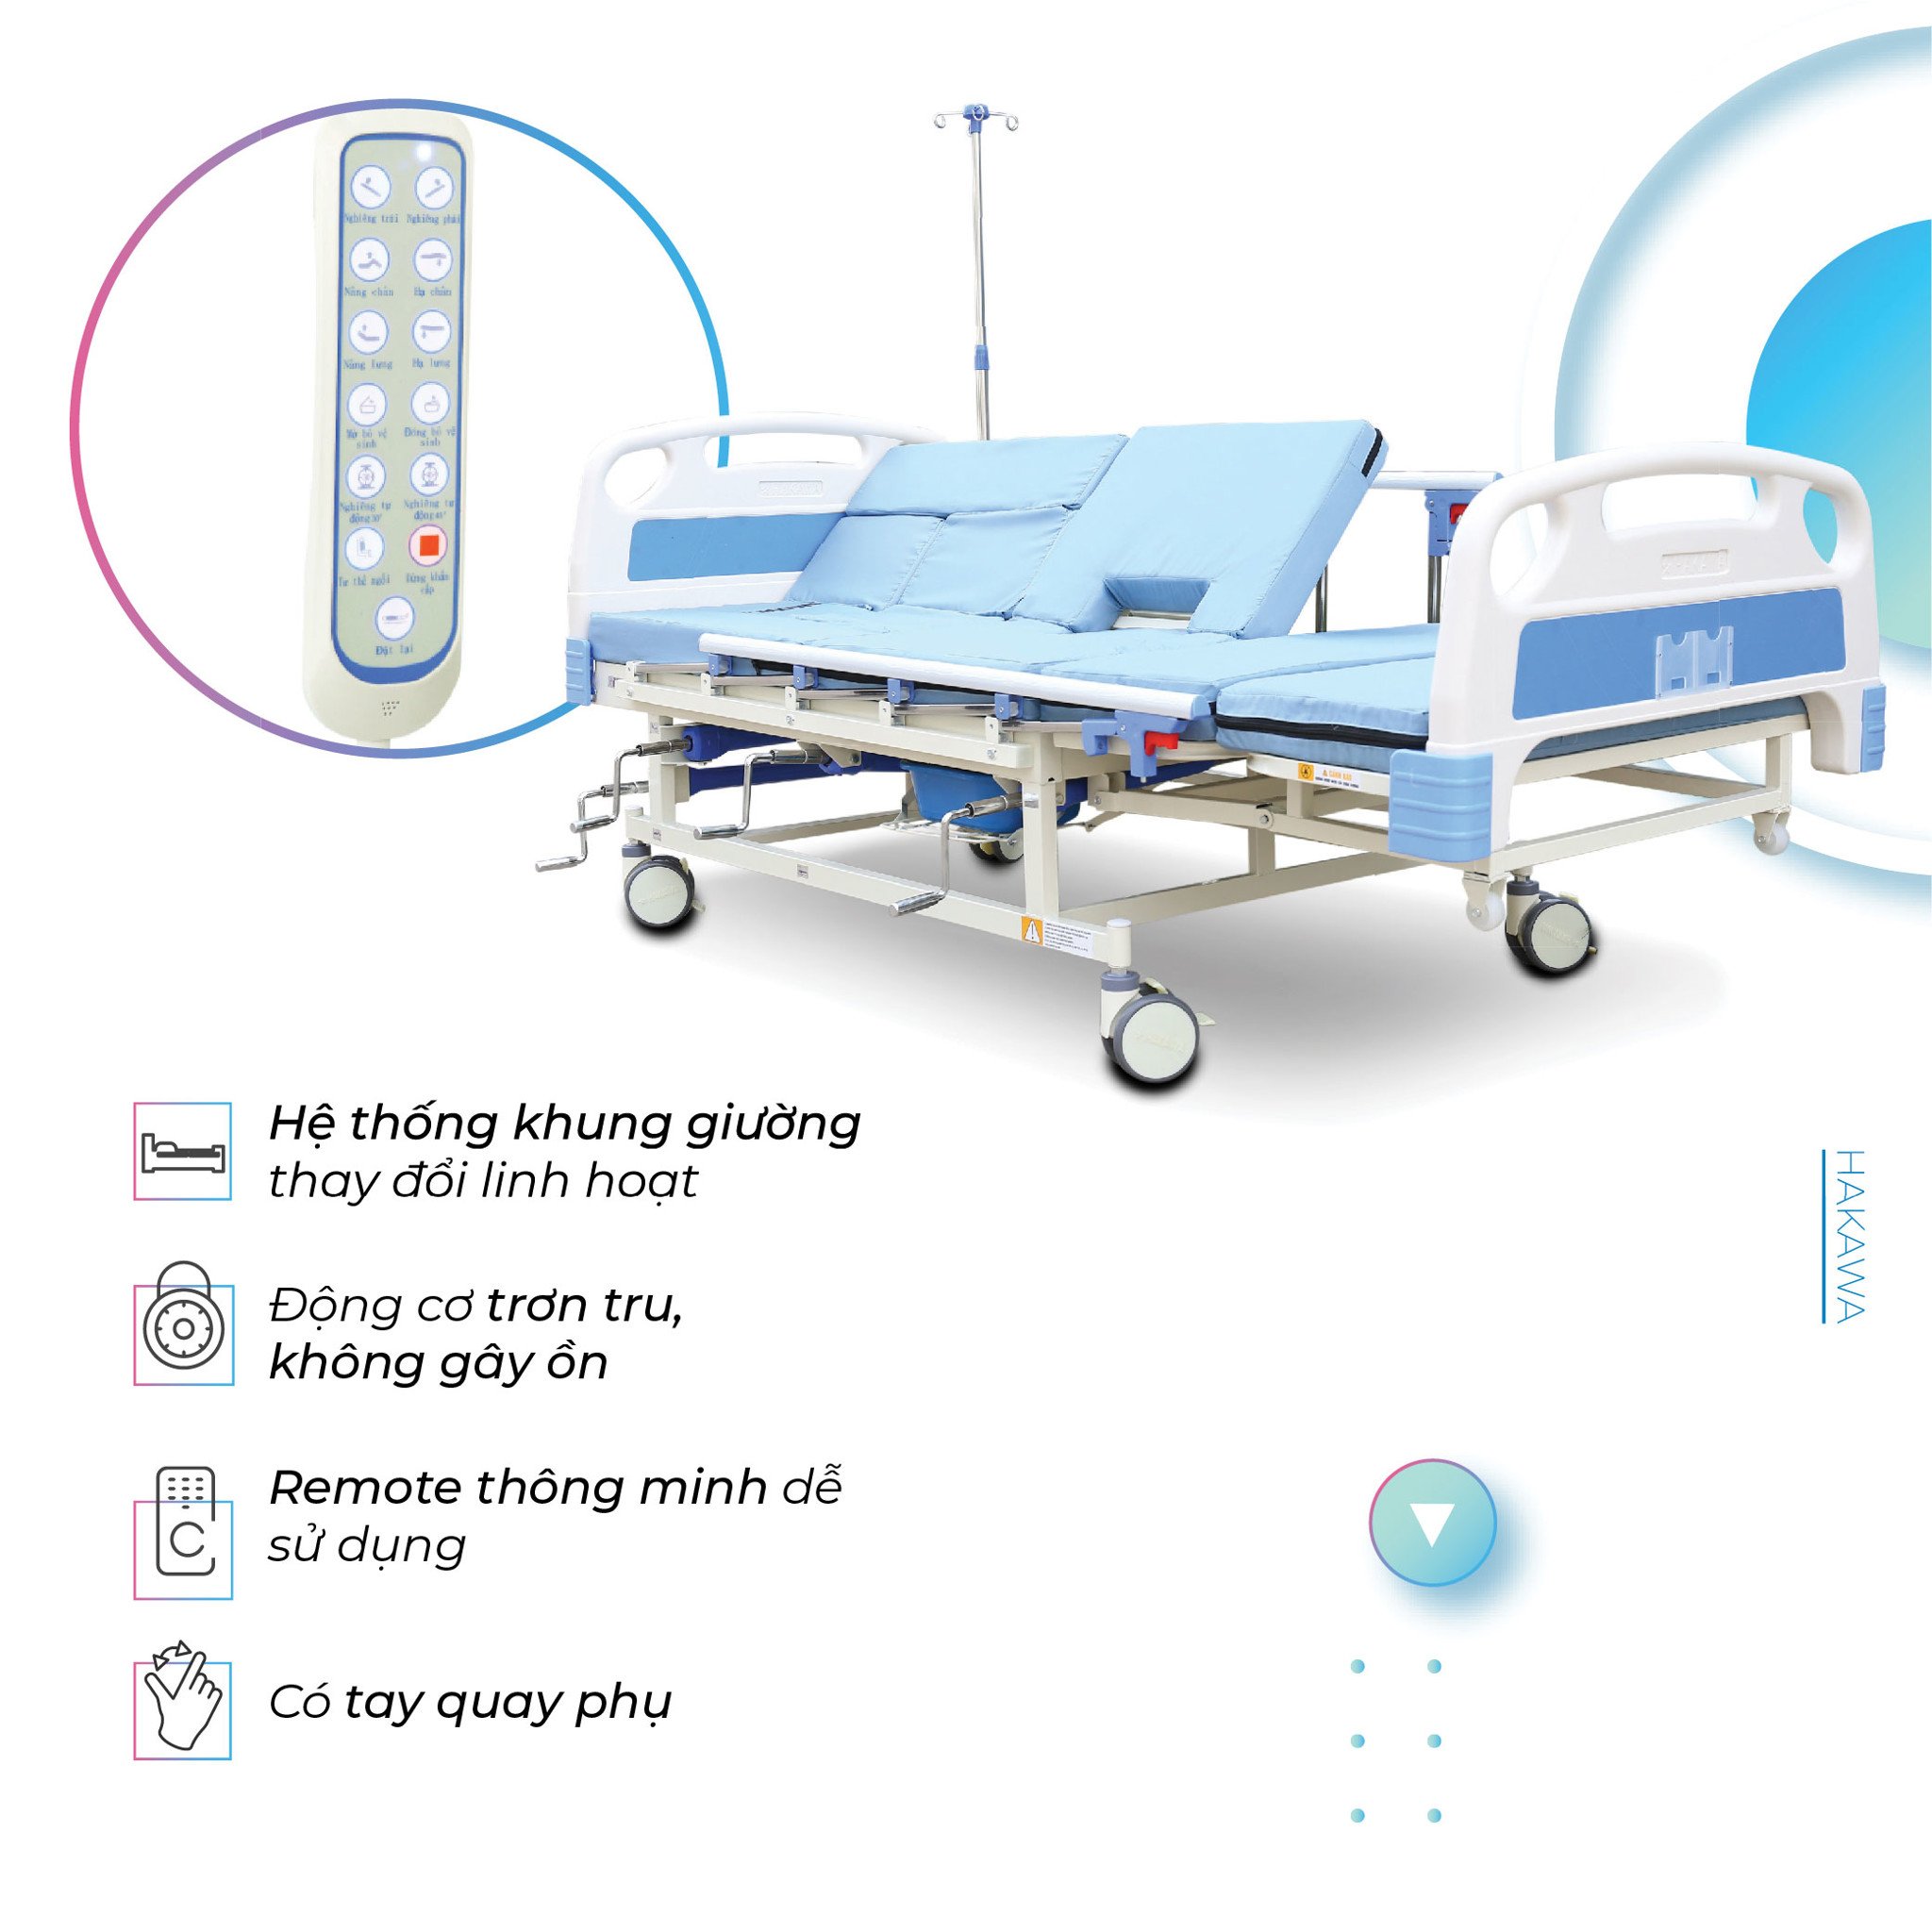 Giường y tế Hakawa được thiết kế thông minh tích hợp hệ thống khung giường thay đổi linh hoạt, động cơ mạnh mẽ không gây tiếng ồn, remote dễ sử dụng và có tay quay cơ hỗ trợ khi mất điện